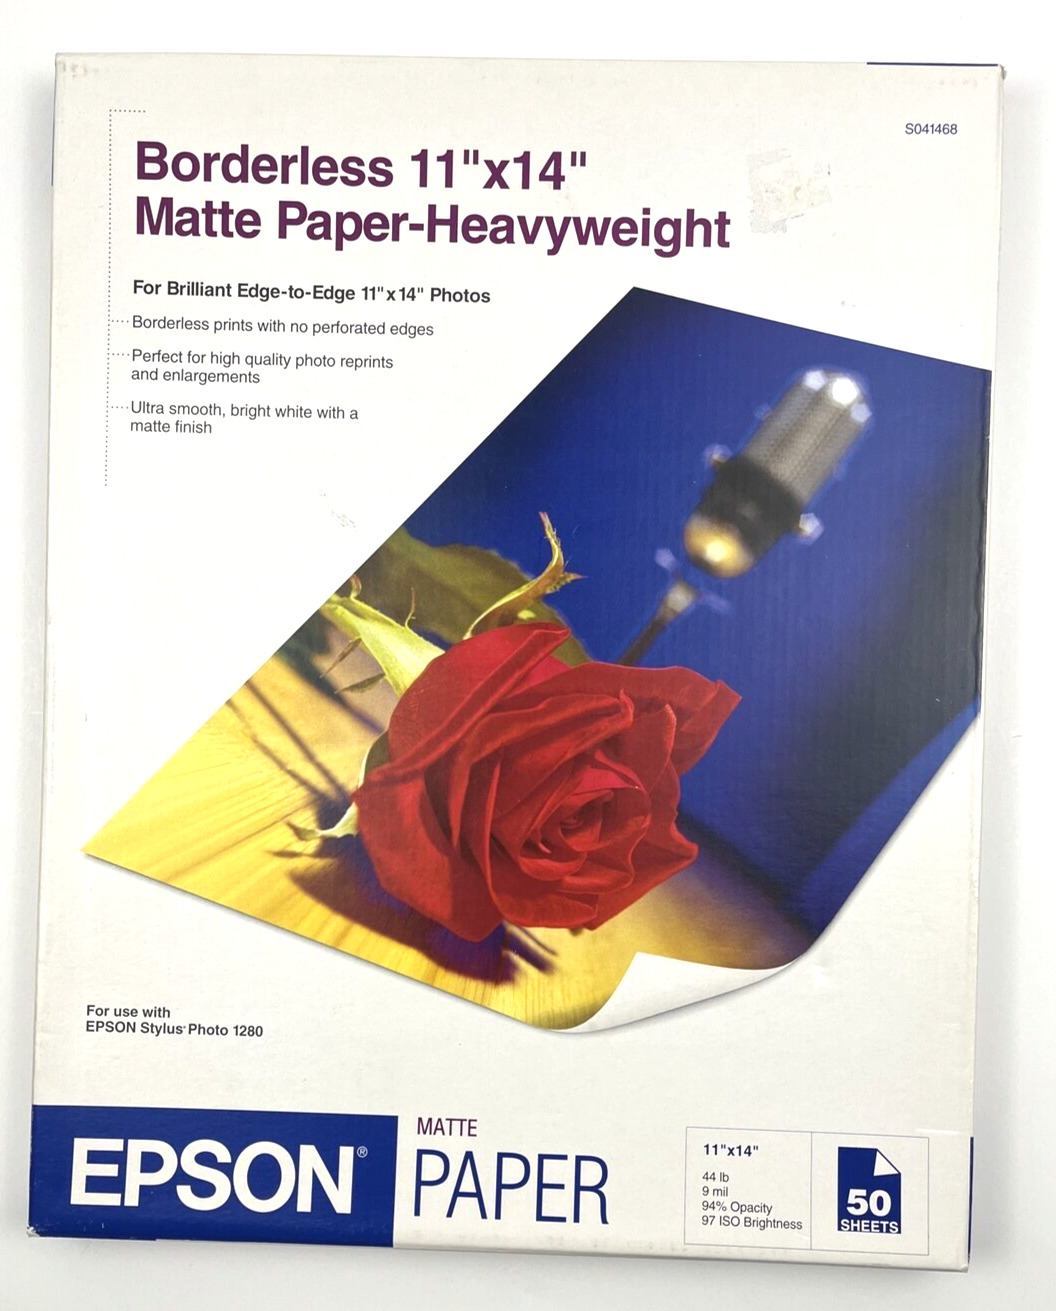 Epson Matte Paper (s041468) - Borderless 11